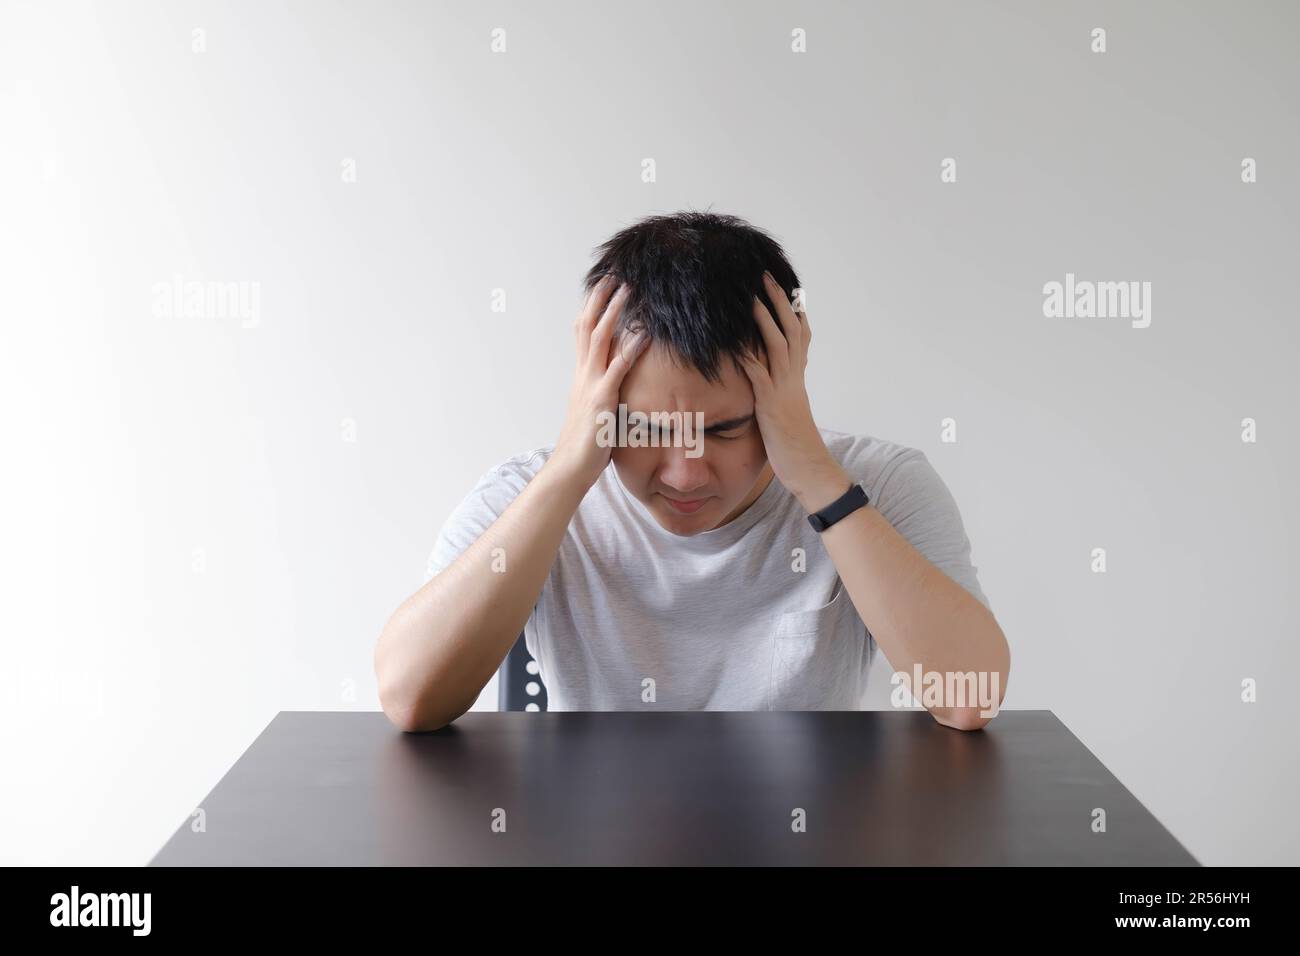 Ein junger Asiate, der ein graues T-Shirt trägt, fühlt sich schwindlig und legt seine beiden Hände auf den schwarzen Tisch. Isolierter weißer Hintergrund. Stockfoto